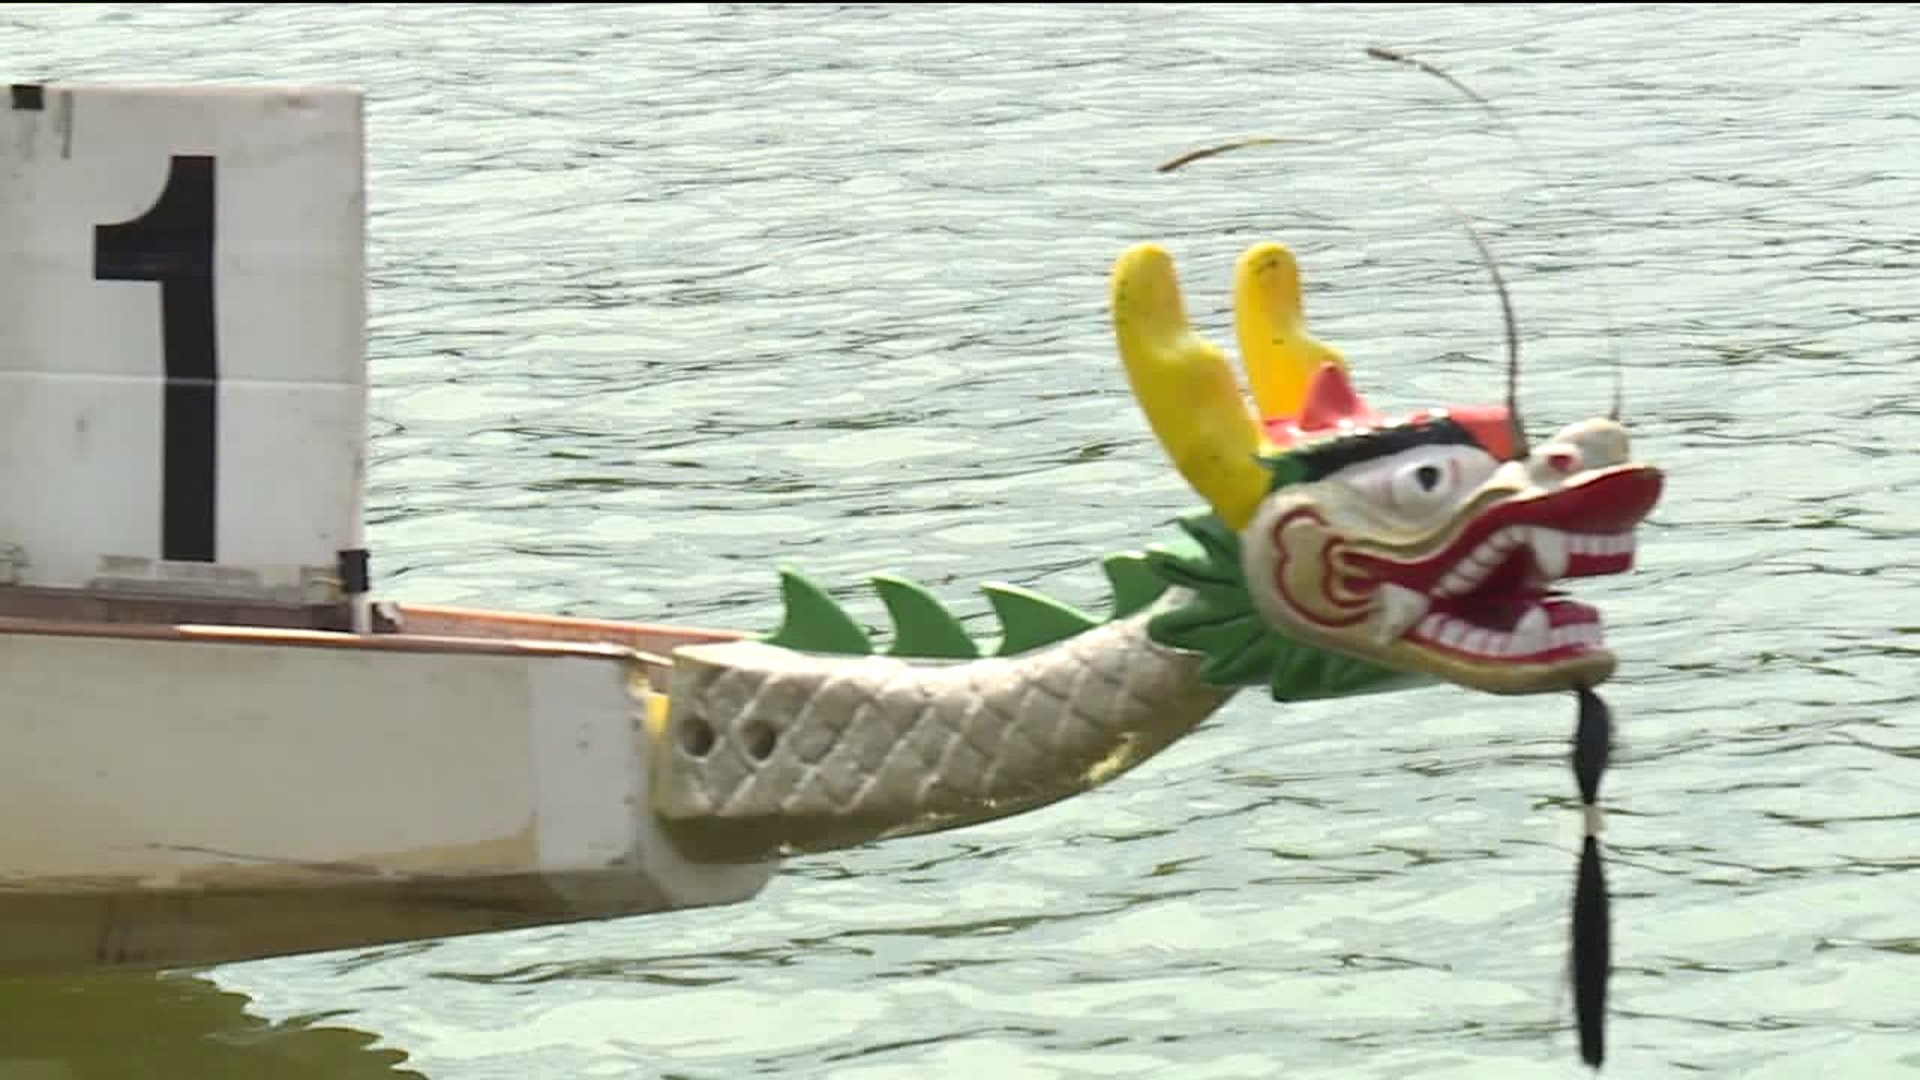 Dragon Boat Races Wrap Up Riverfest 2018 in Wilkes-Barre